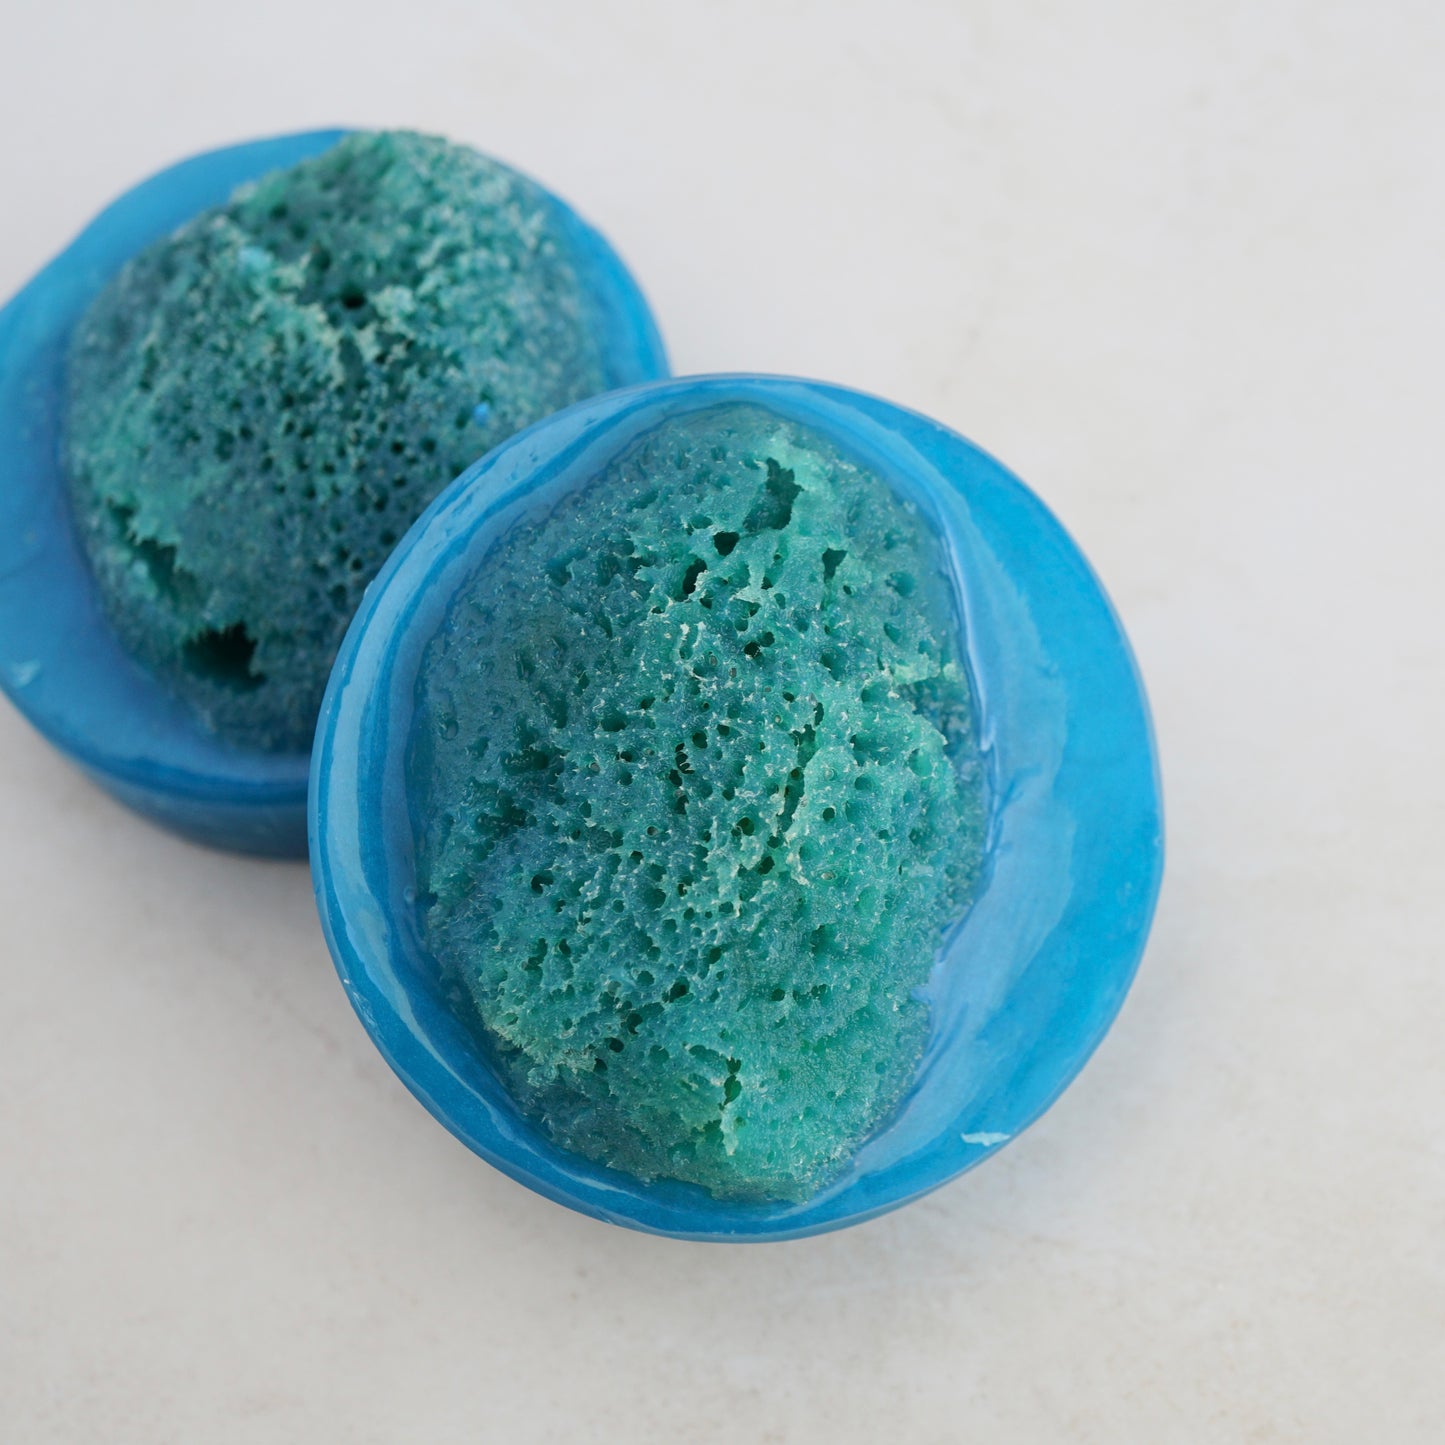 Amsterdam Sponge Soap - Silk Sea Sponge in Glycerin Soap